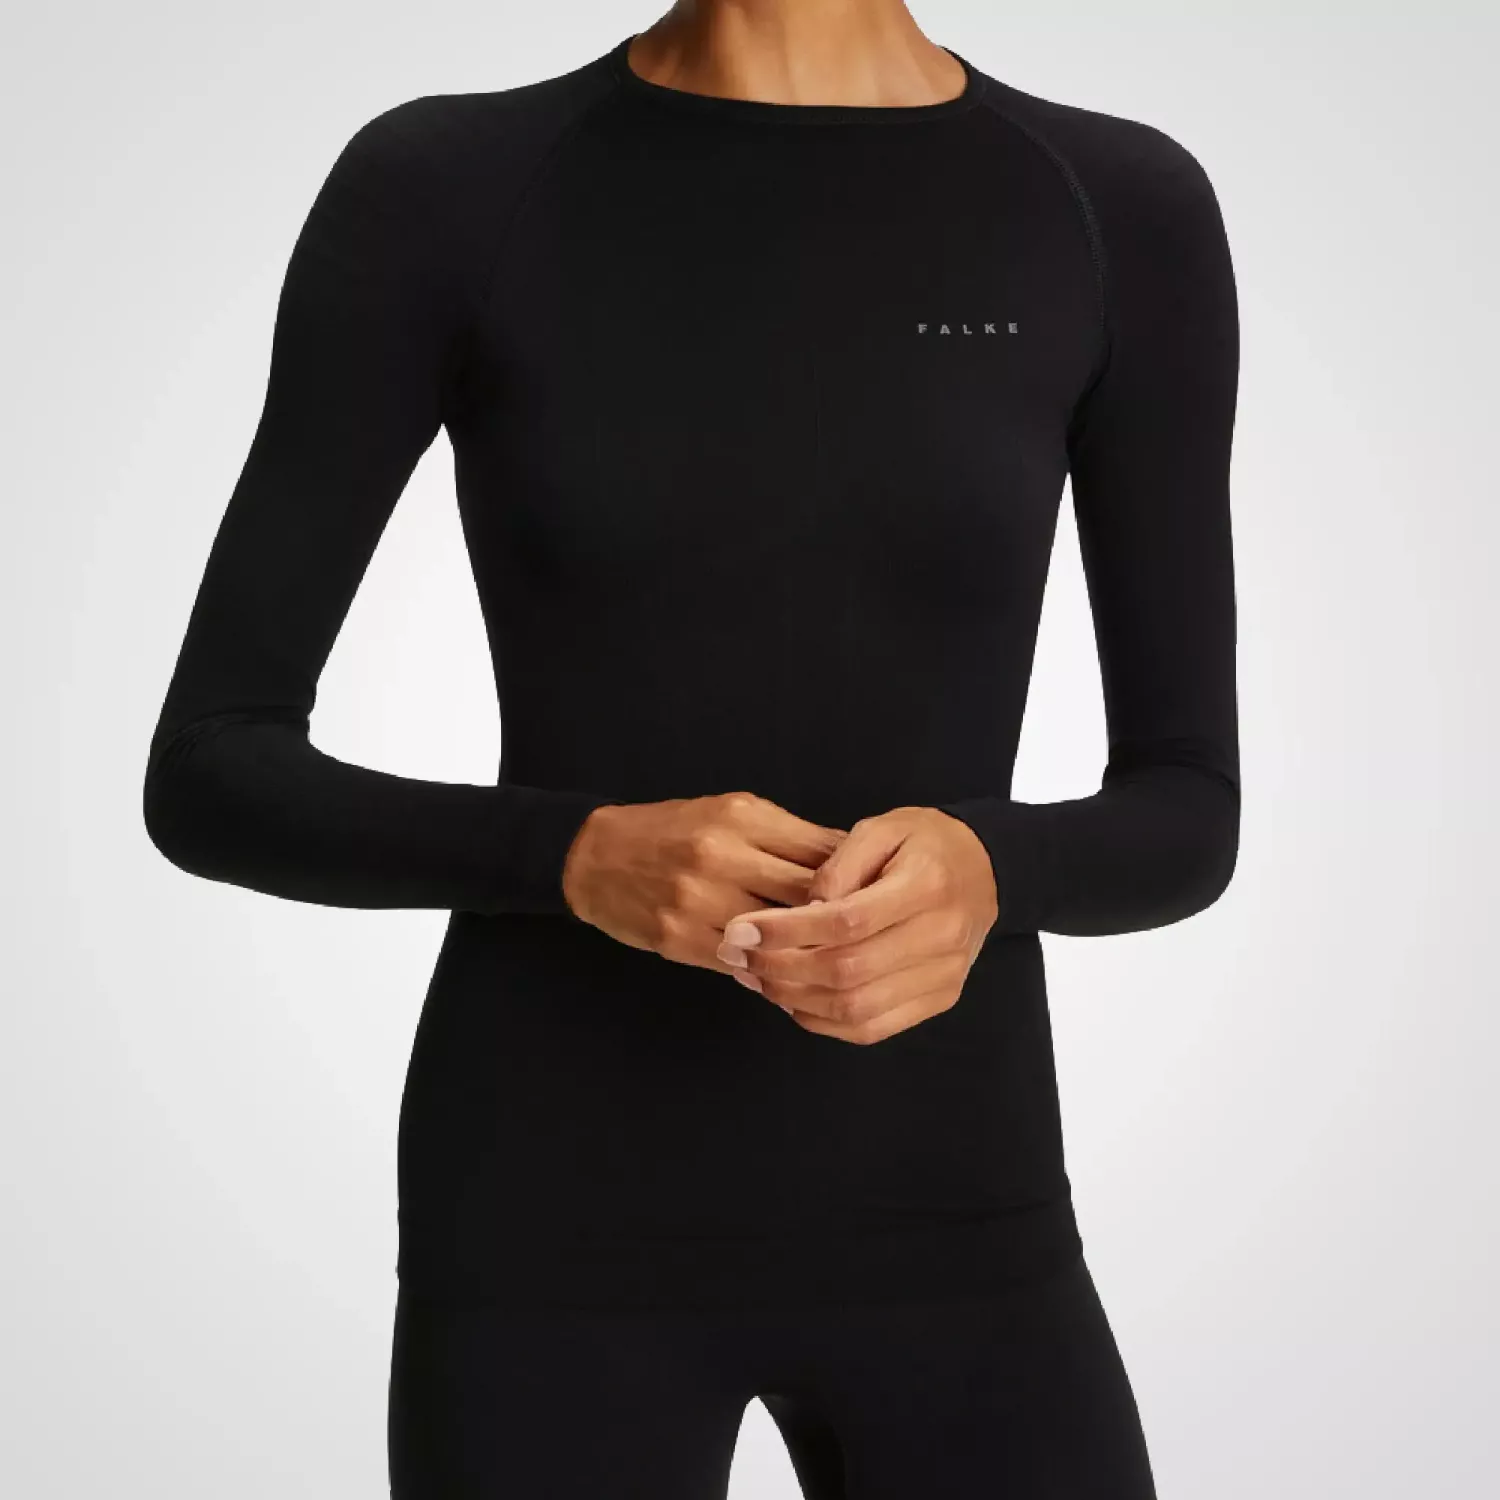 Falke - Warm Longsleeved Shirt Tight Women - Black L